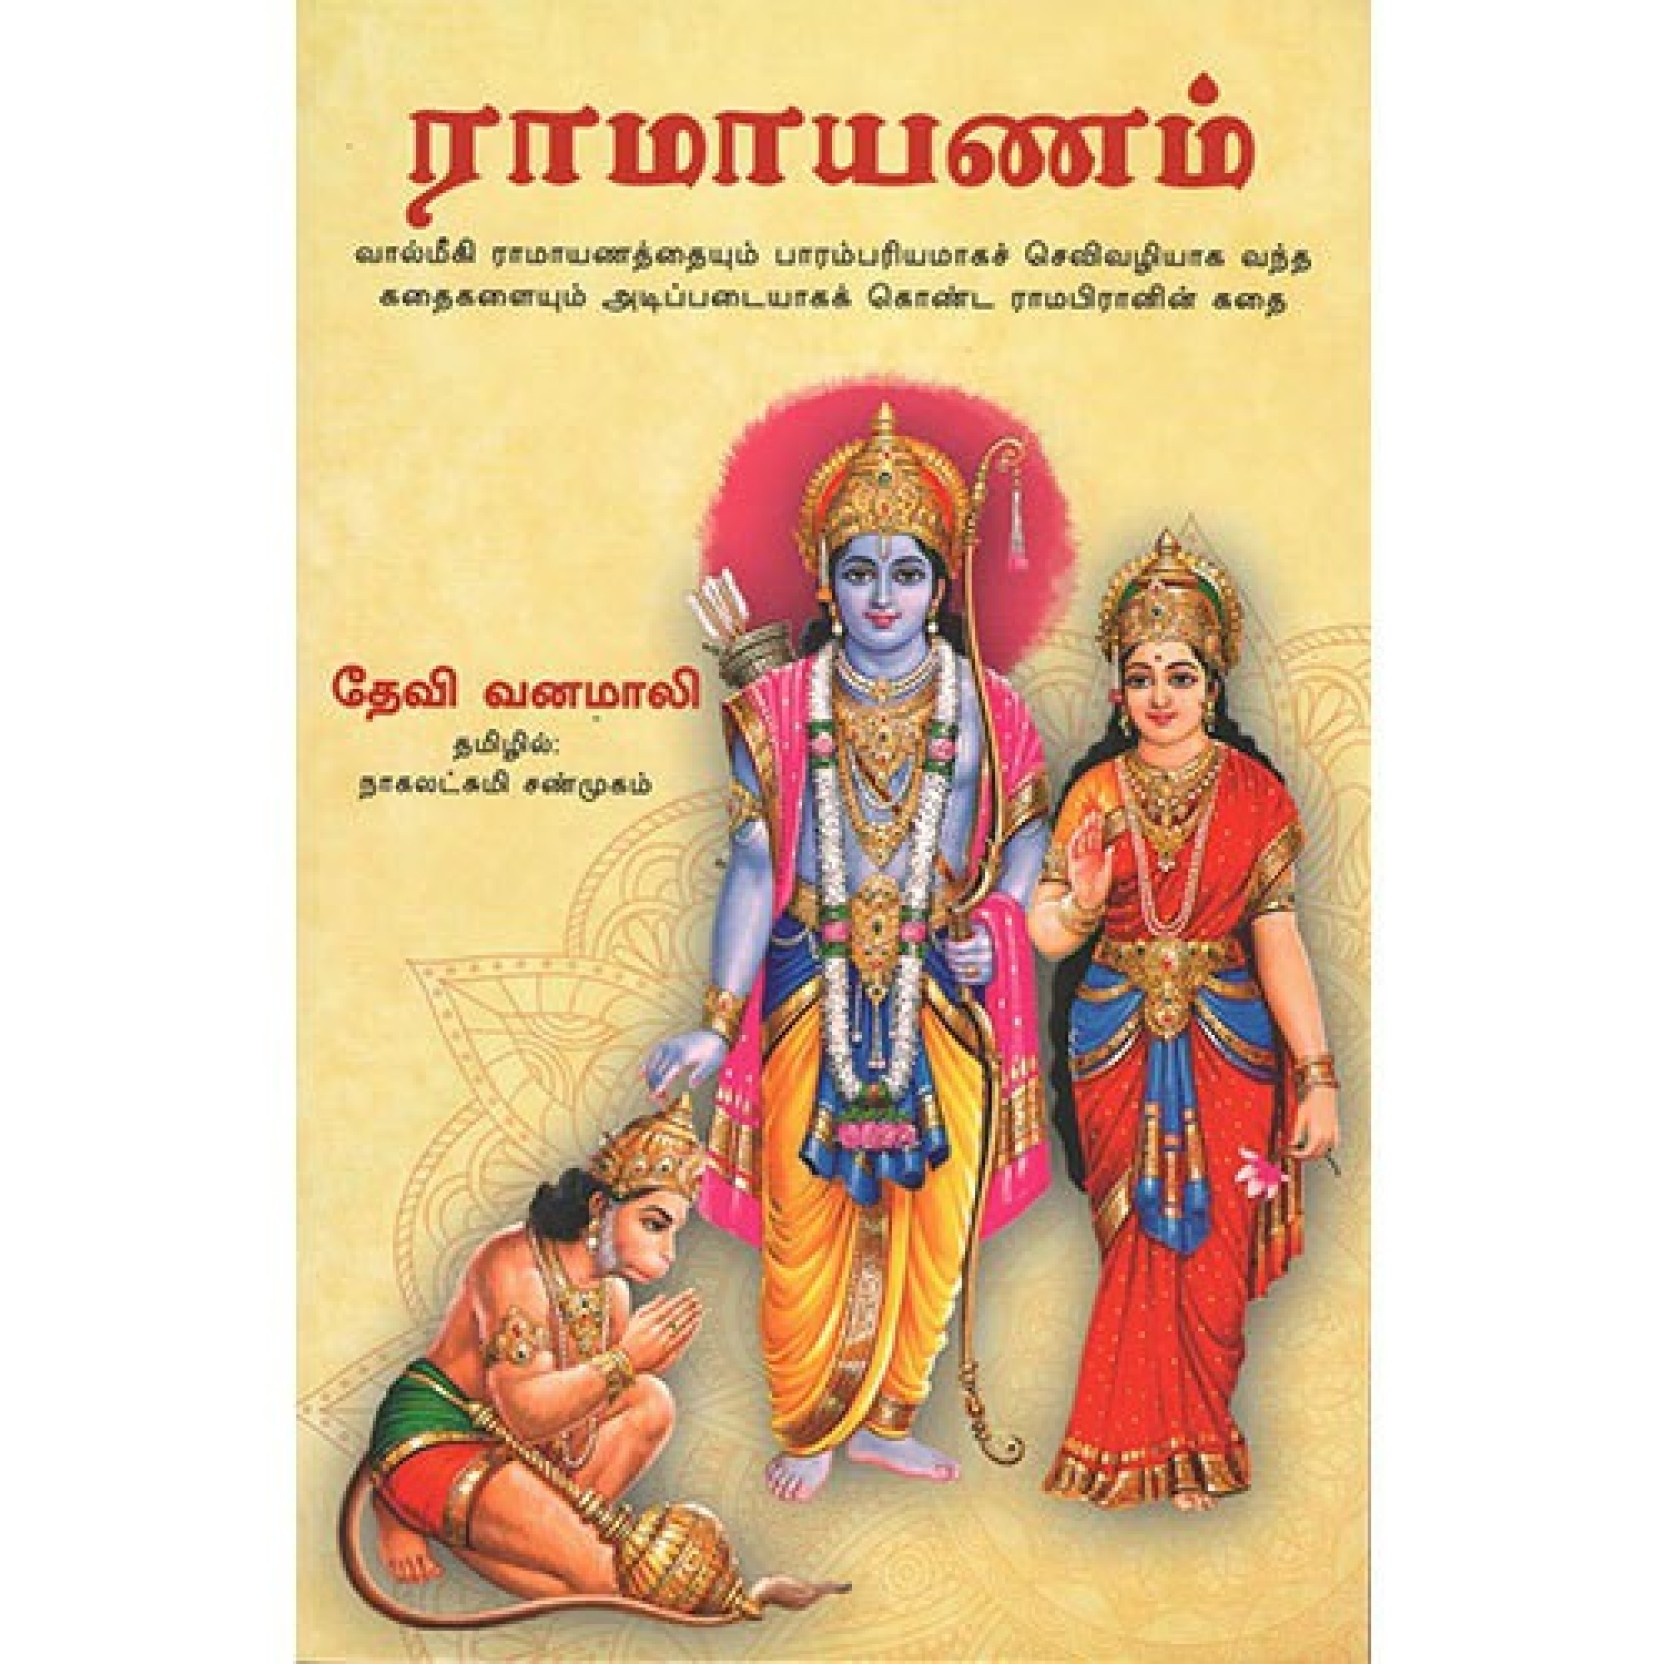 kamba ramayanam story in tamil pdf book